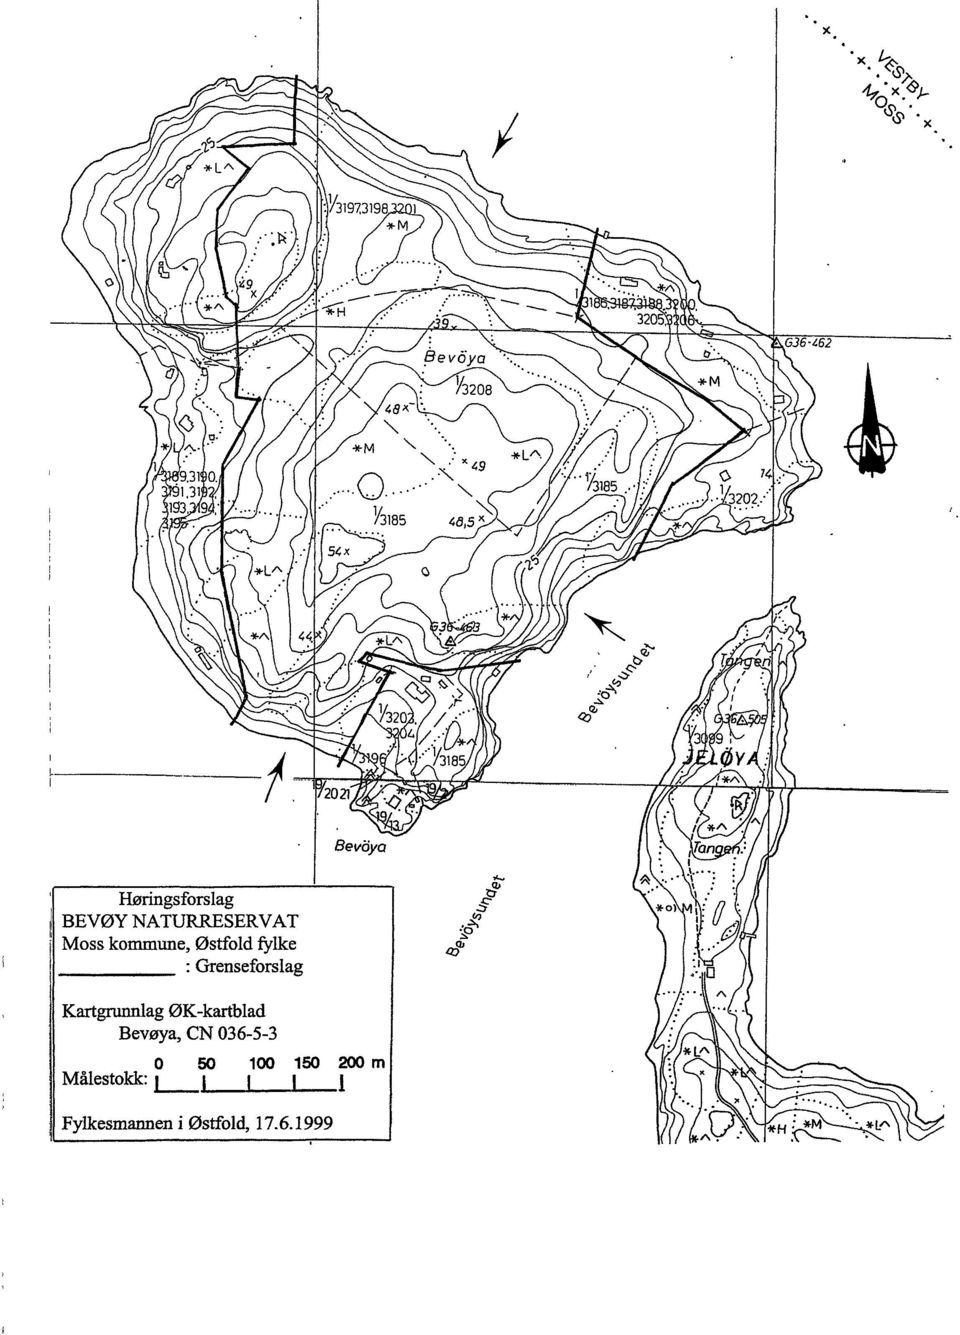 ØK-kartblad Bevøya, CN 036-5-3 Målestokk: i 50 l